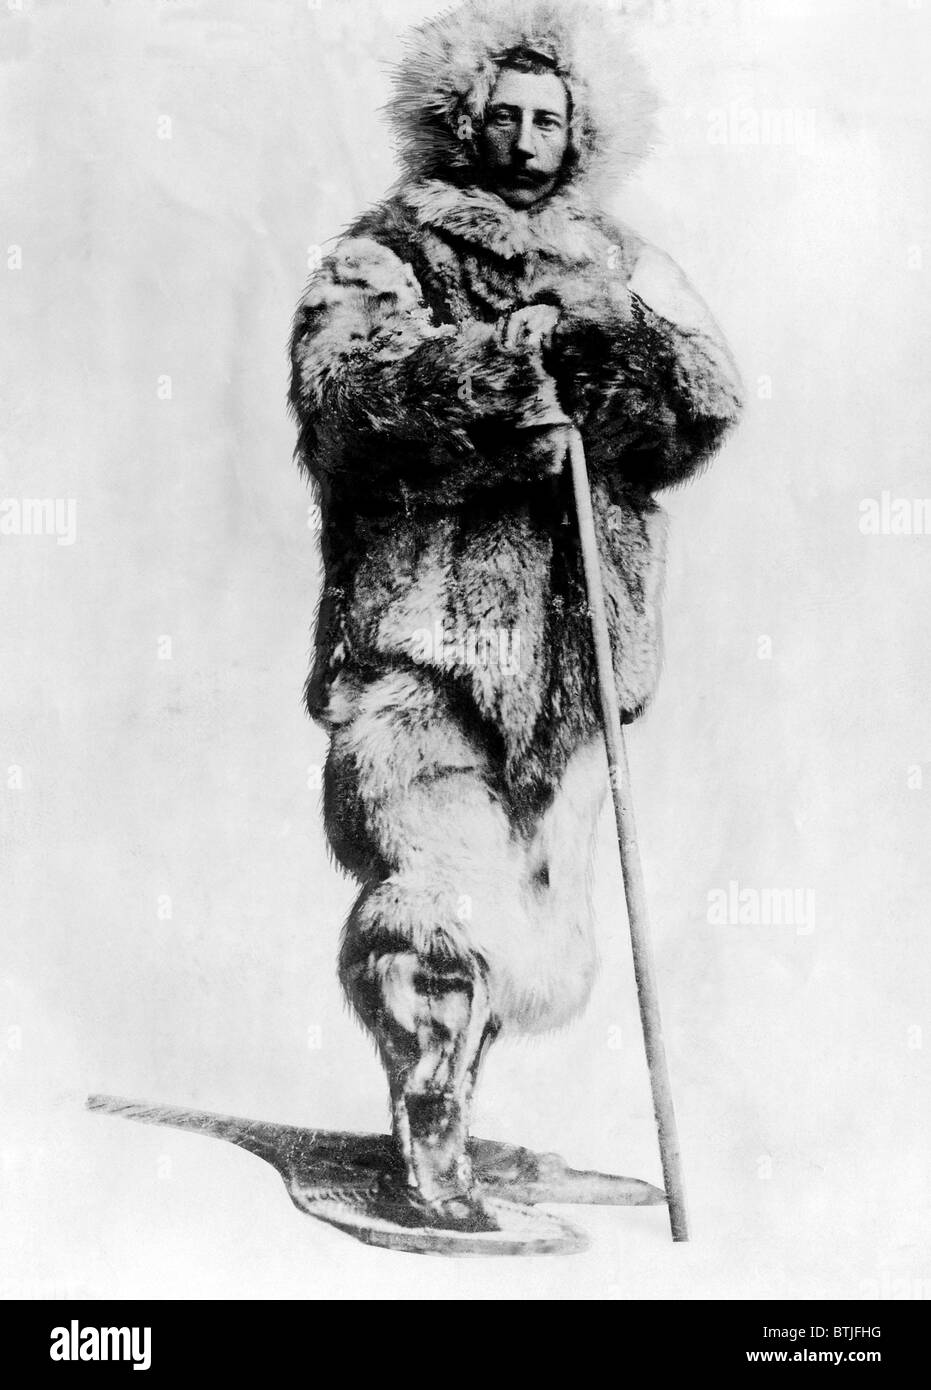 Roald Amundsen, la prima persona a raggiungere il Polo Sud. L'esploratore norvegese ha reso vi nel 1911. Foto scattata nel 1912. Cou Foto Stock